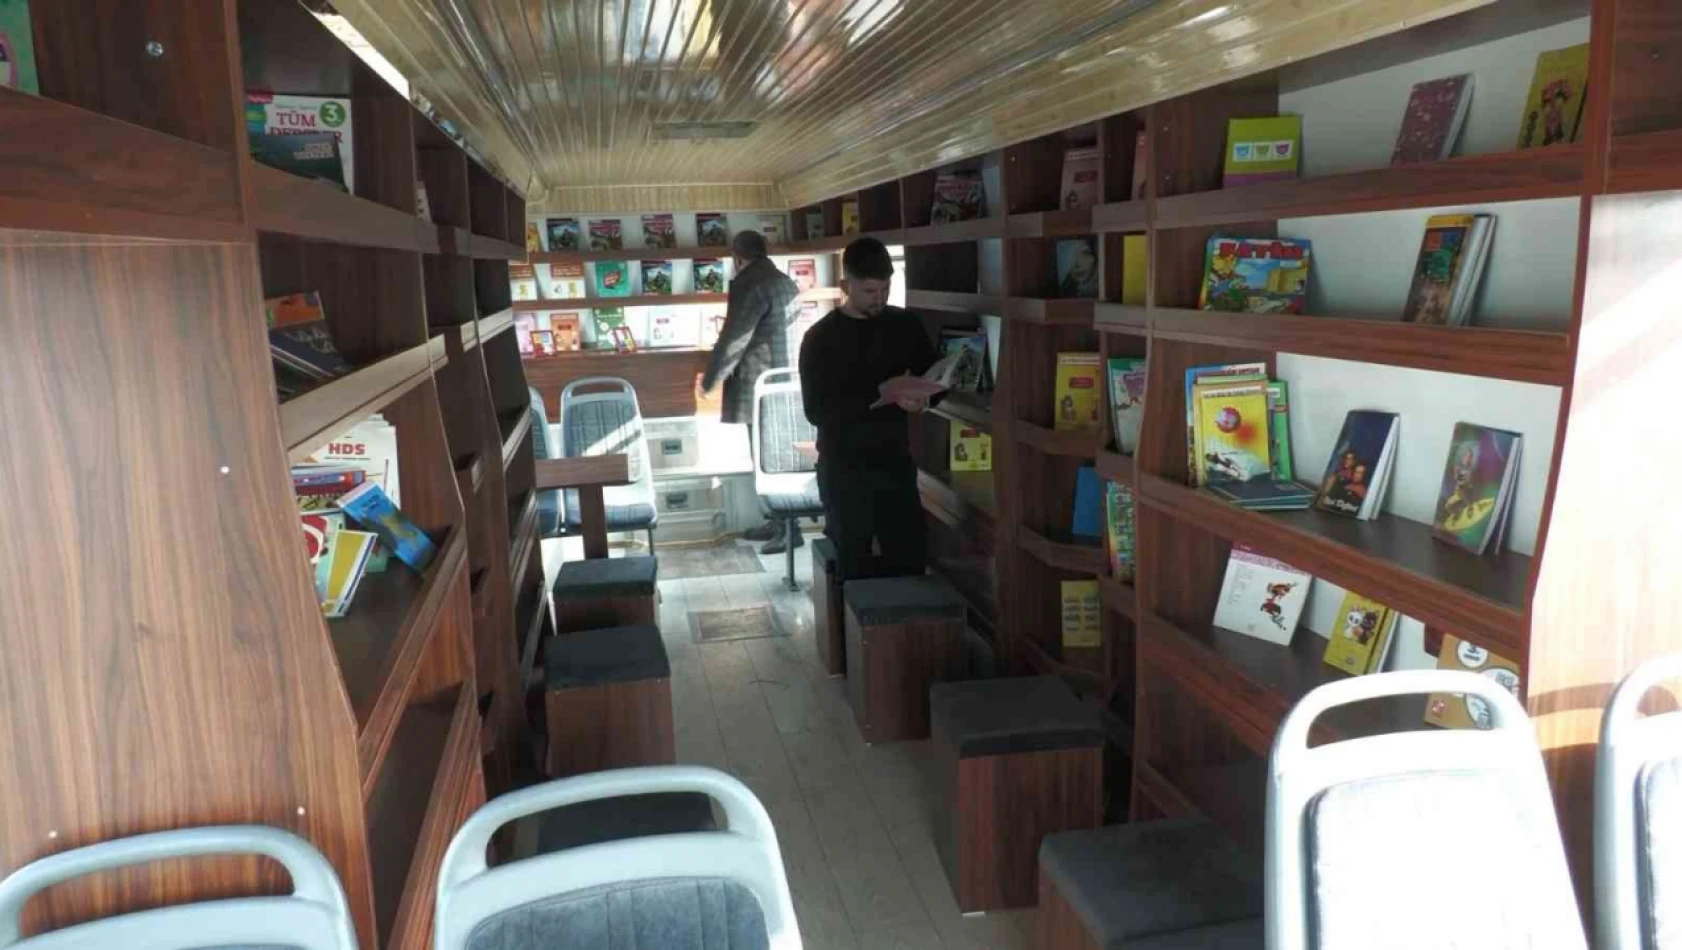 Kütüphanesi olmayan okulların kütüphanesi 'Kitapbüs' olacak